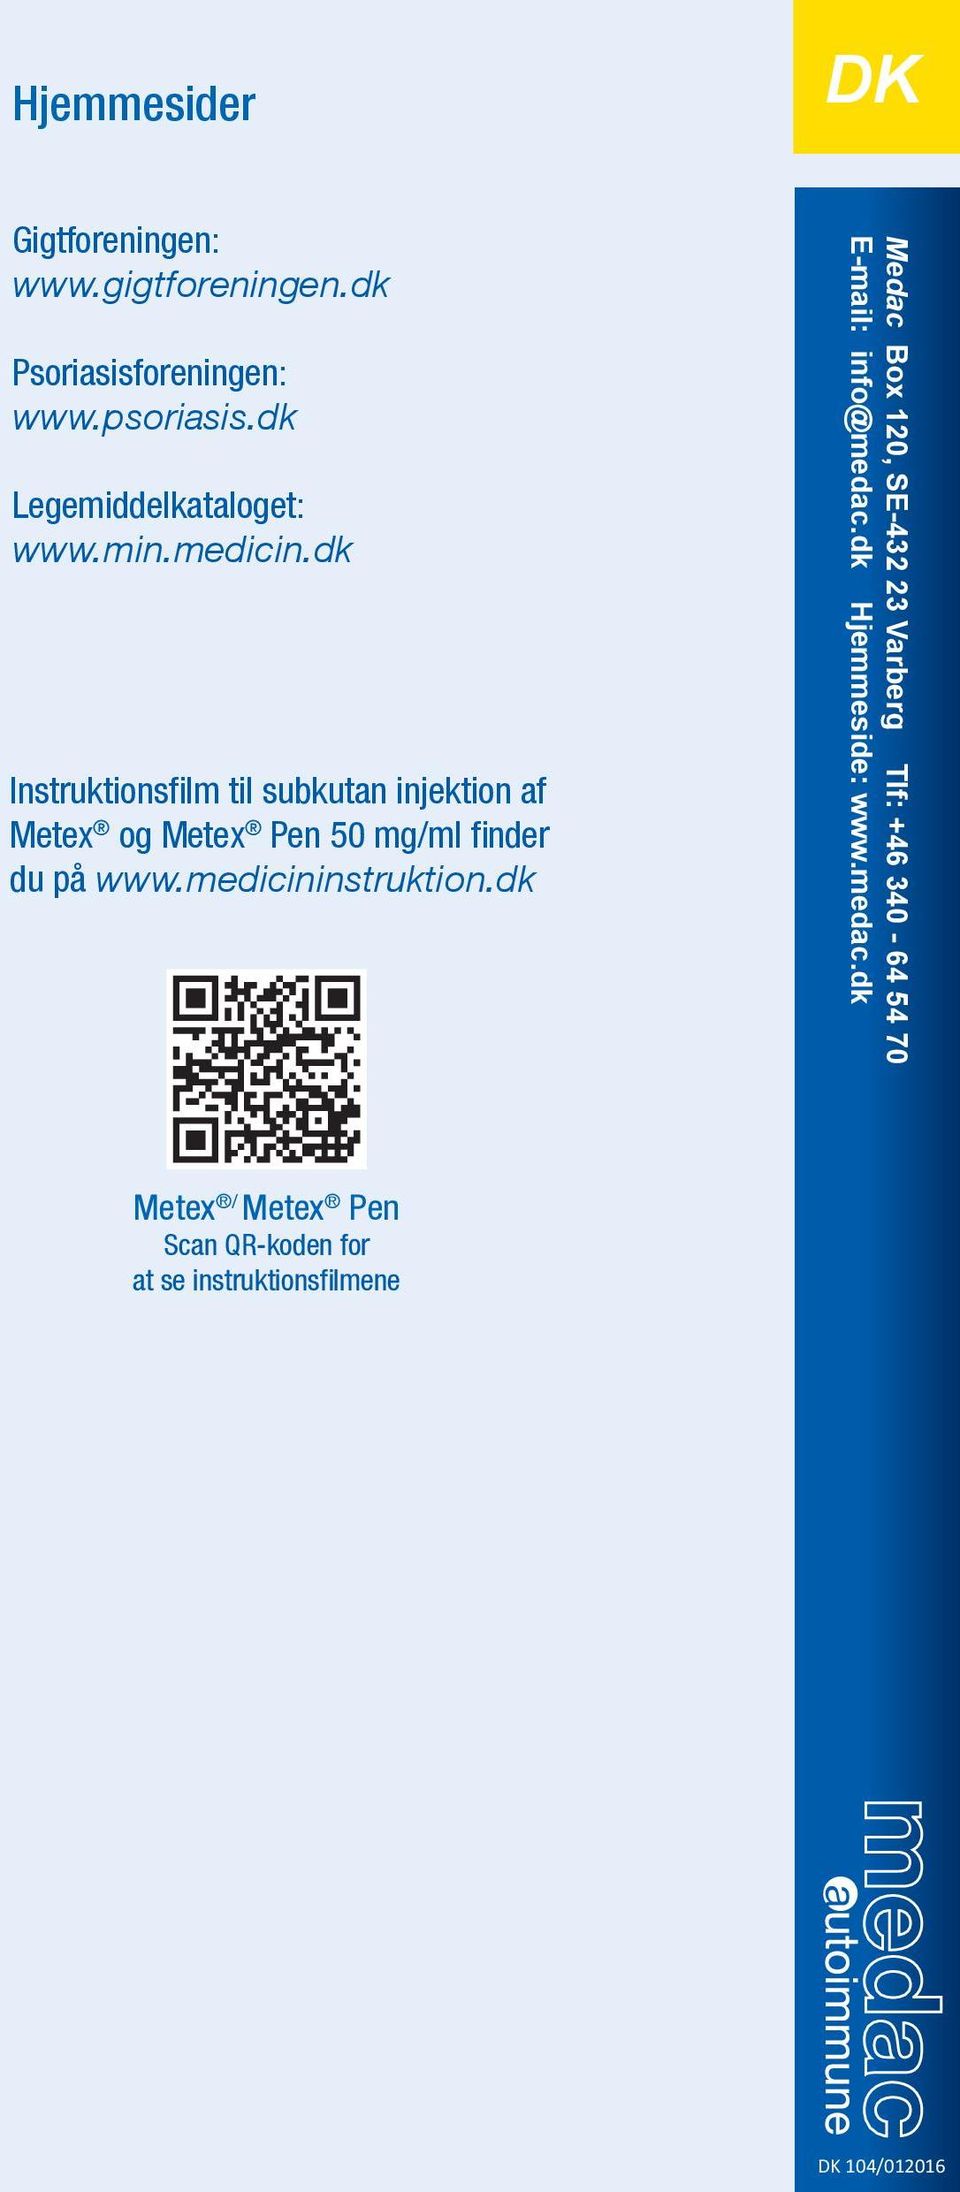 dk Instruktionsfi lm til subkutan injektion af Metex og Metex Pen 50 mg/ml fi nder du på www.